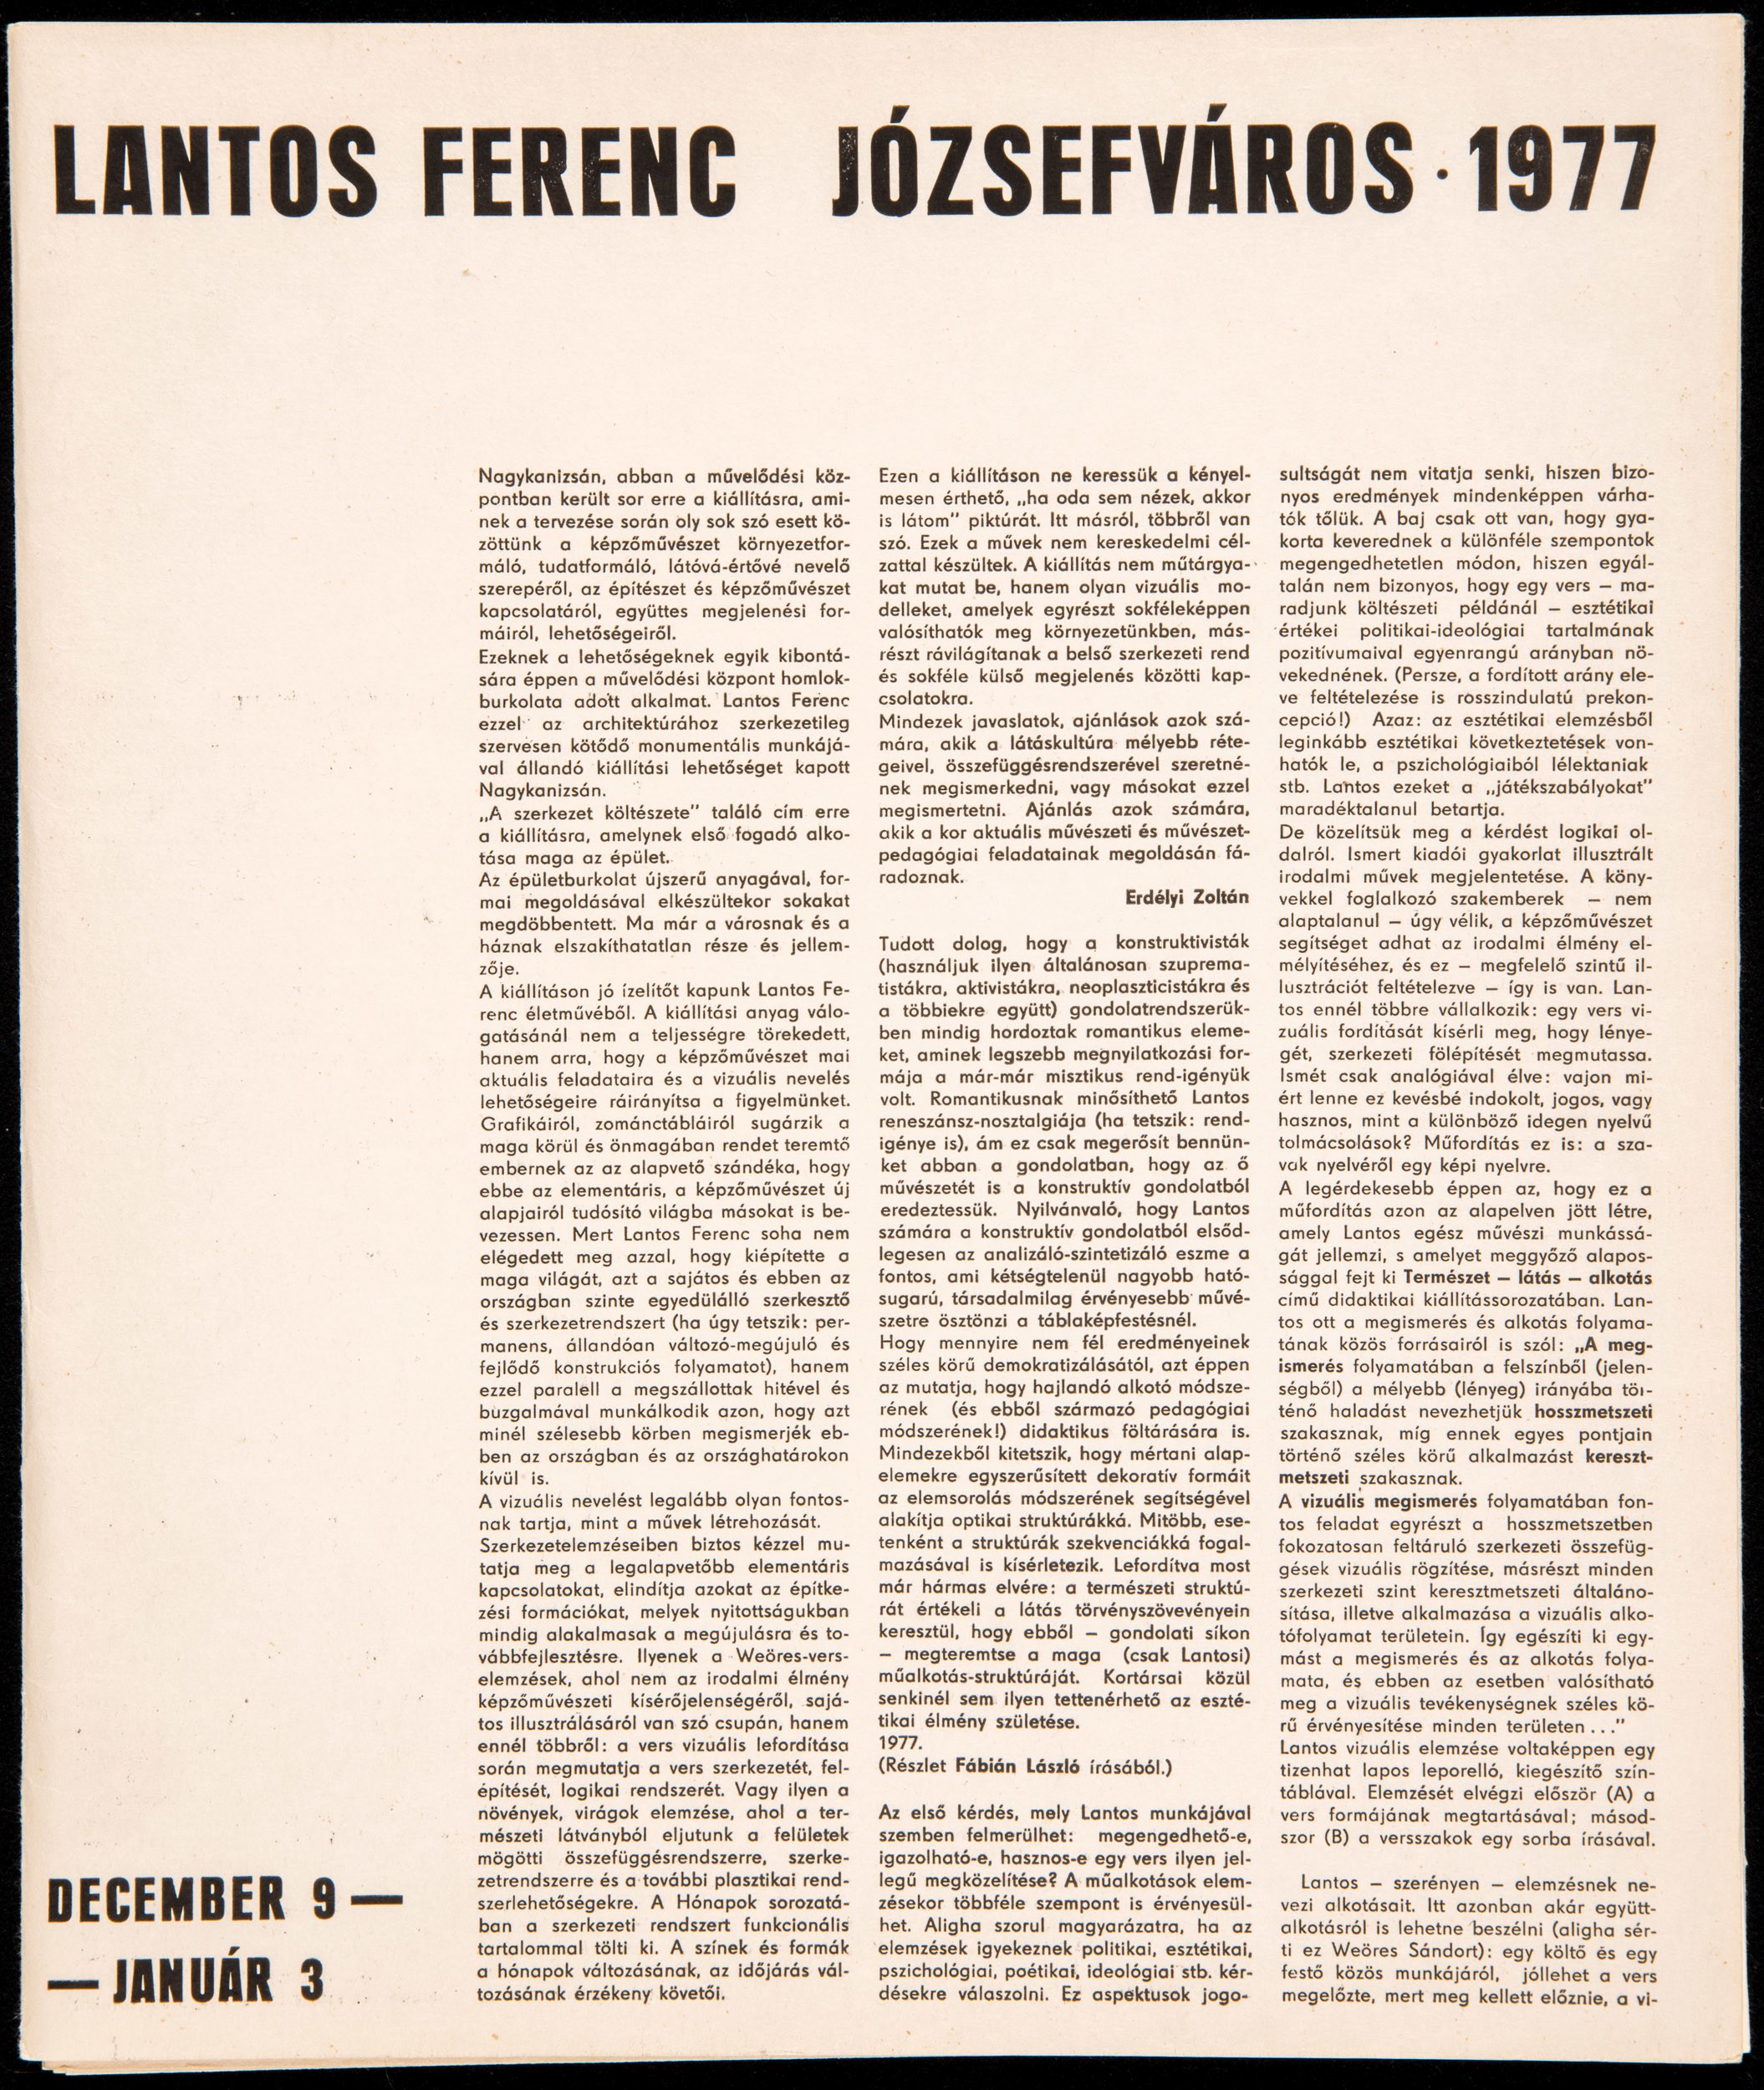 Lantos Ferenc - Józsefváros 1977 mappa (Müller Miklós és Jan S. Keithly gyűjteménye - New York, USA CC BY-NC-SA)